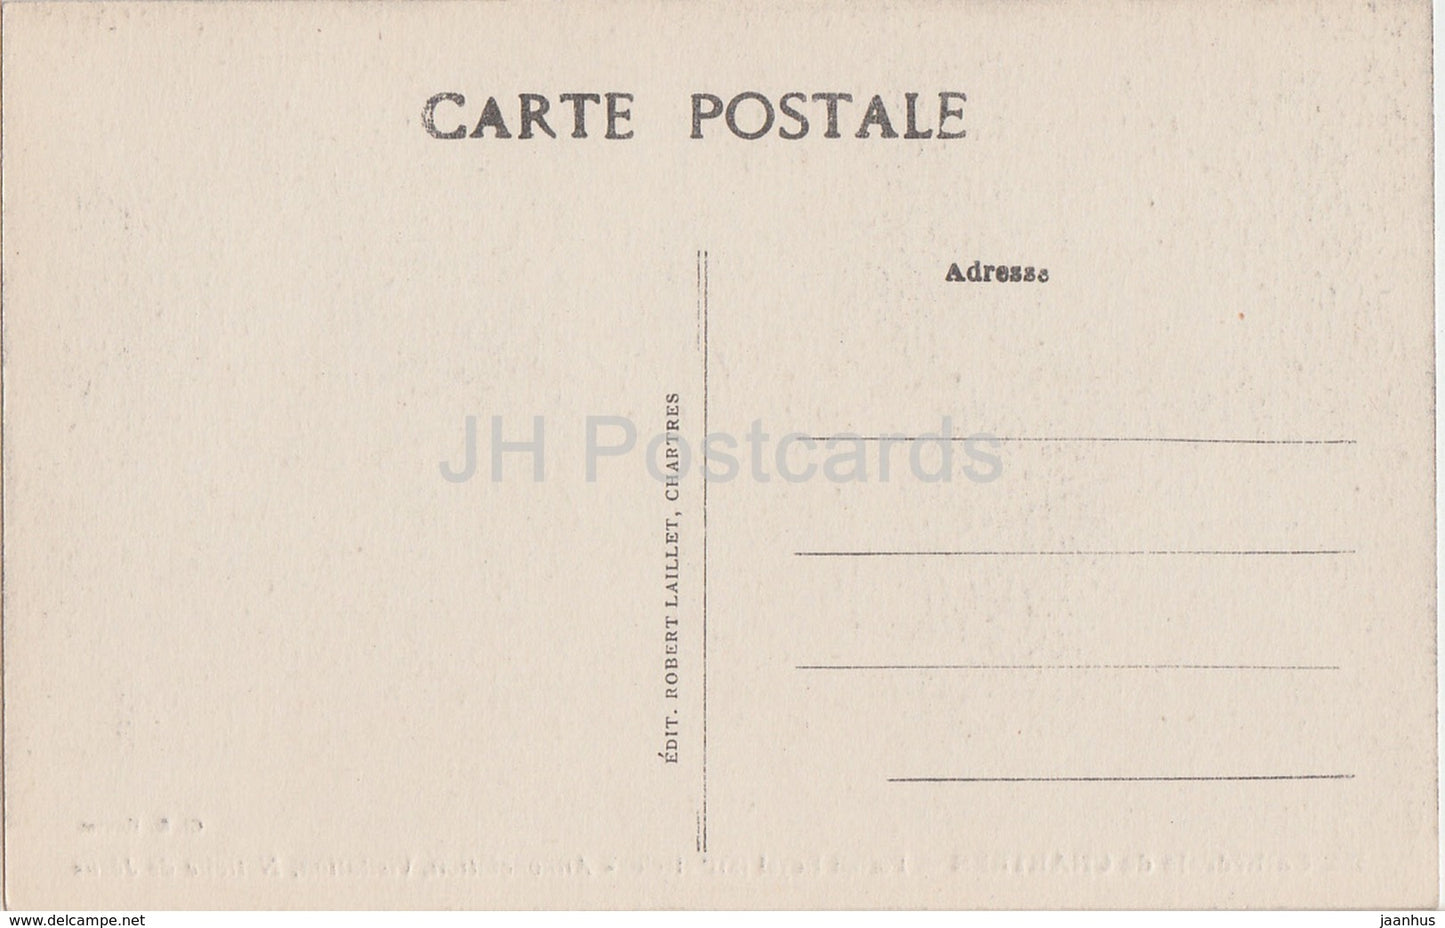 Cathédrale de Chartres - Portail Royal - Annonciation - Visitation - 155 - cathédrale - carte postale ancienne - France - inutilisée